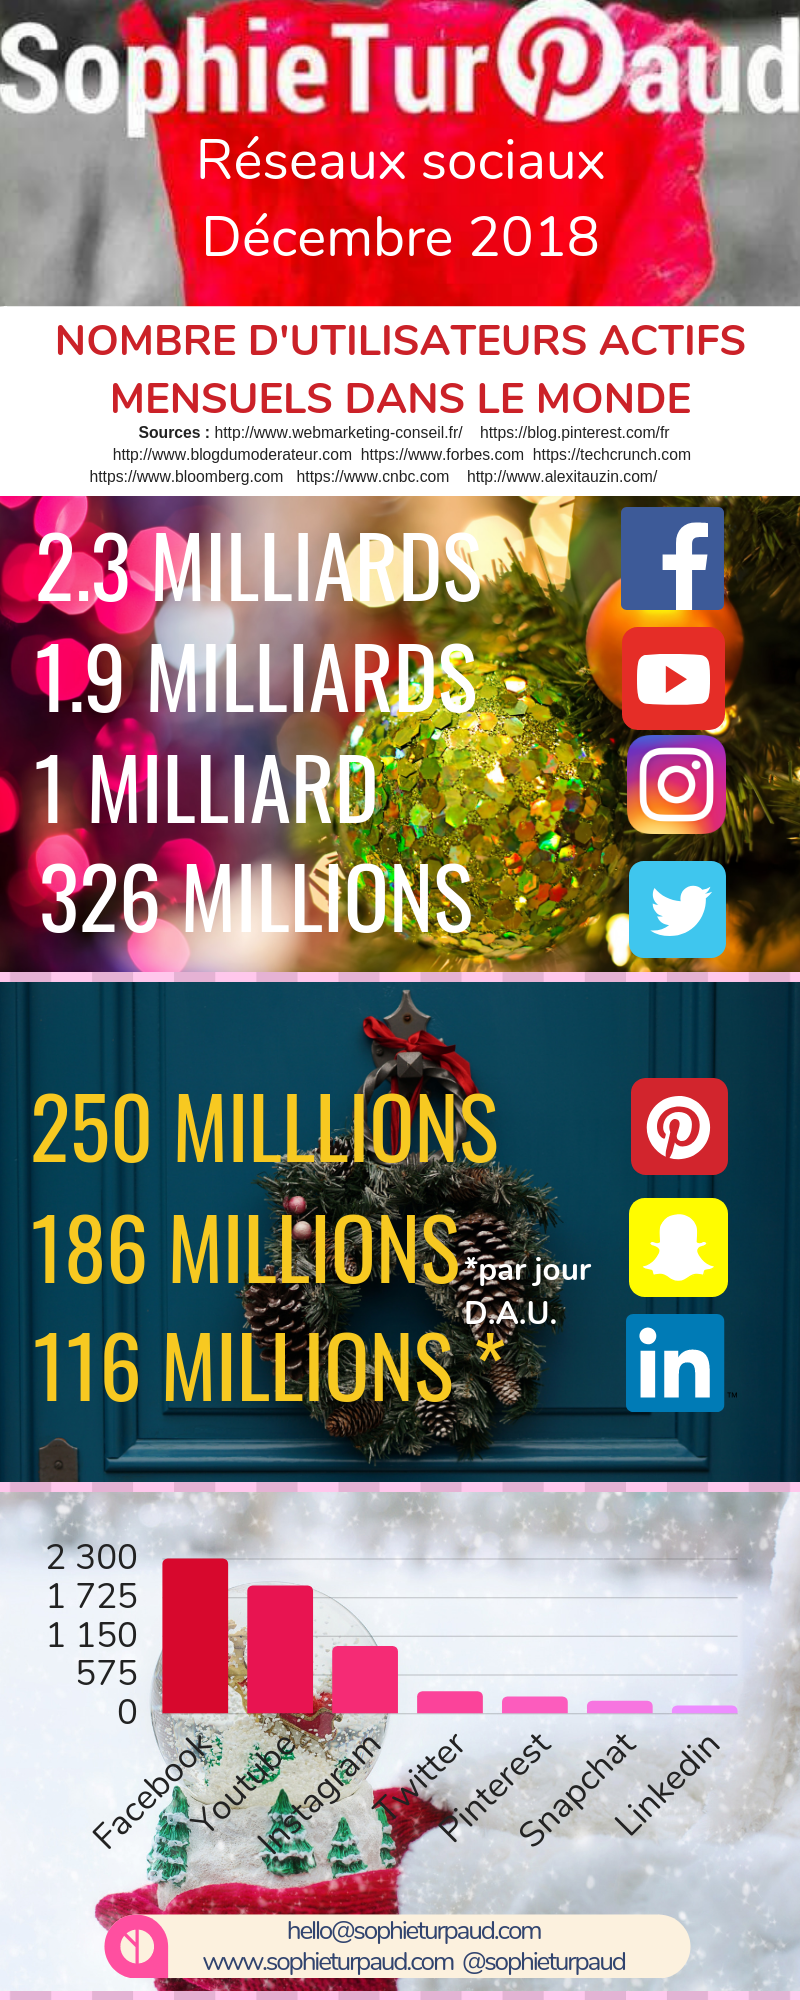 Infographie réseaux sociaux mise à jour décembre 2018 via @sophieturpaud #socialmedia